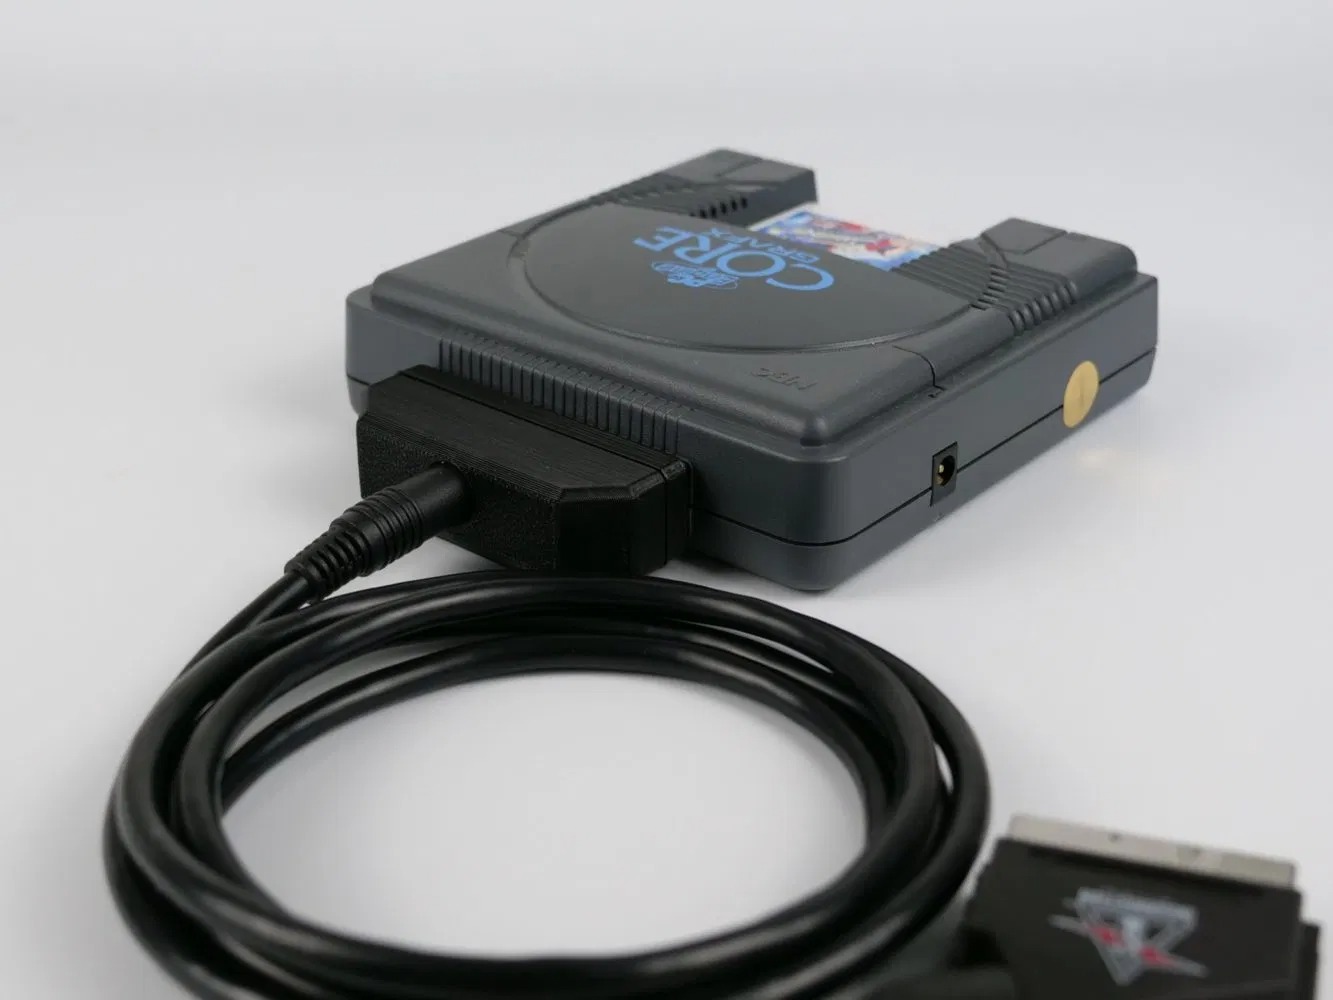 PCエンジン＆Turbo Grafx-16用のRGBビデオアダプター『Spark Plug』が発売